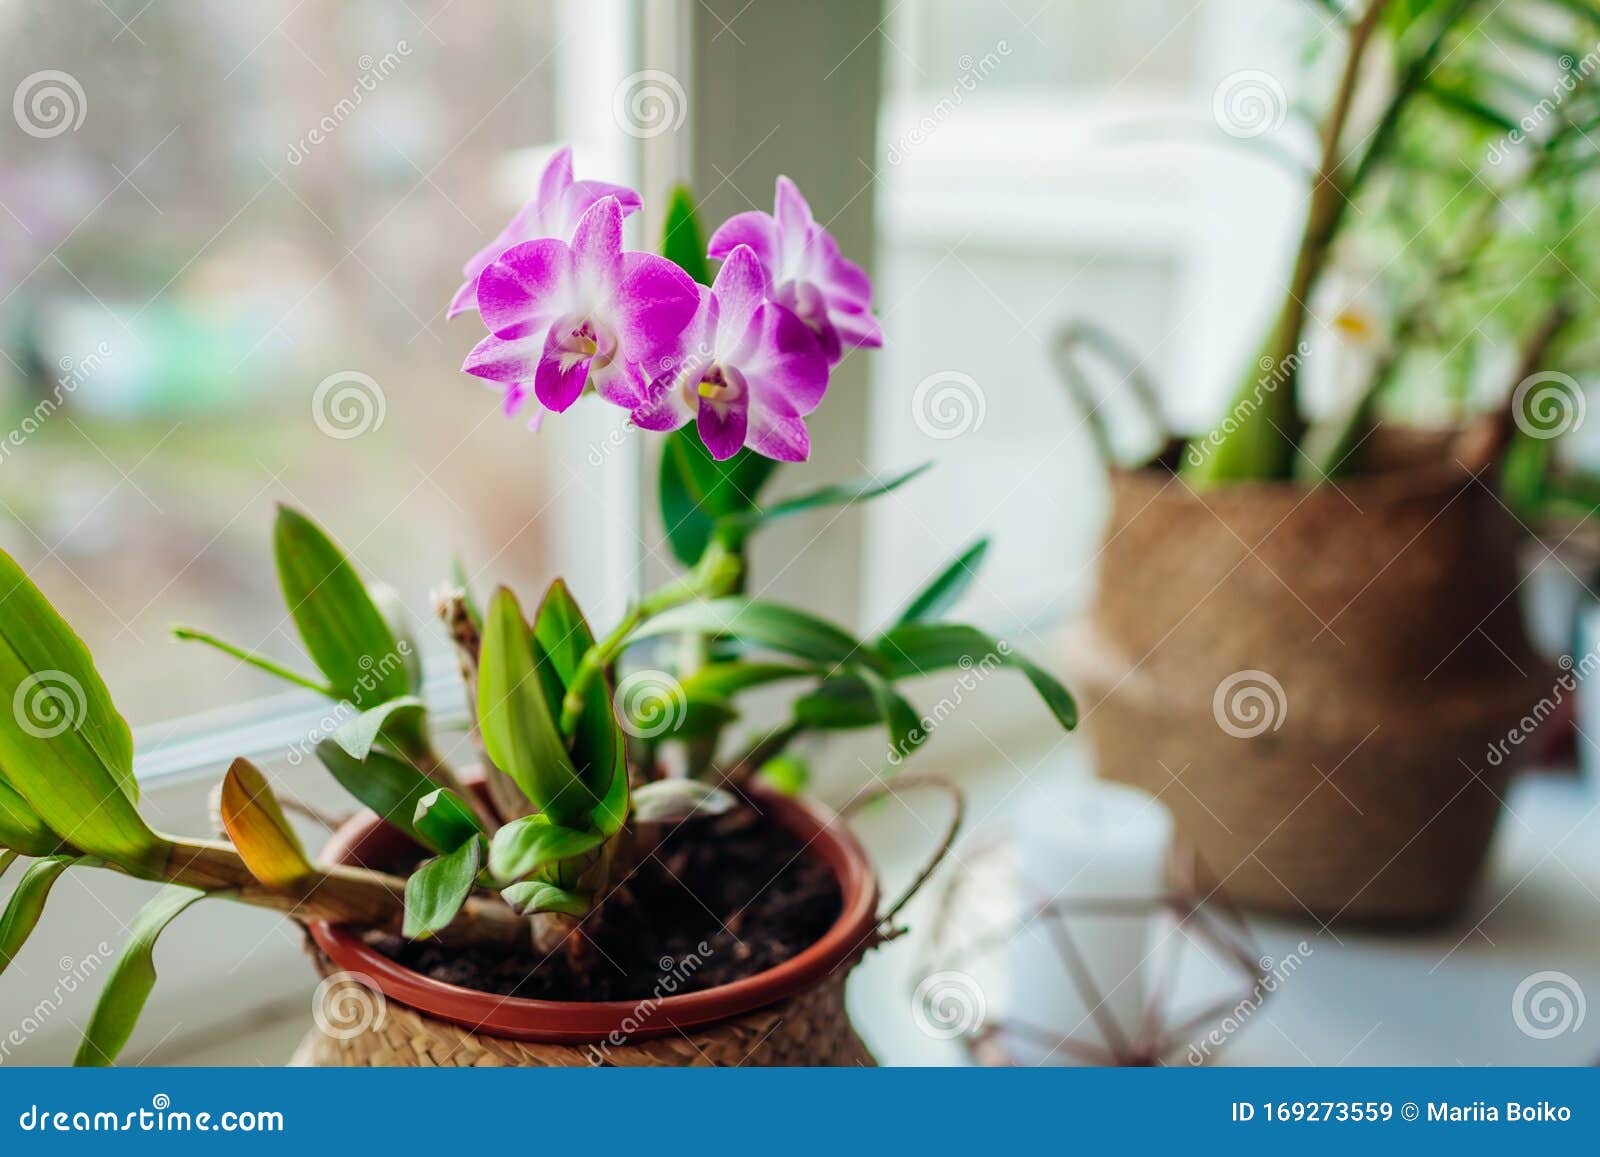 石斛兰 窗台上生长的家用植物 绿意盎然的室内装饰. 石斛兰 窗台上生长的家用植物 花卉公寓的绿意内饰 购物篮使用